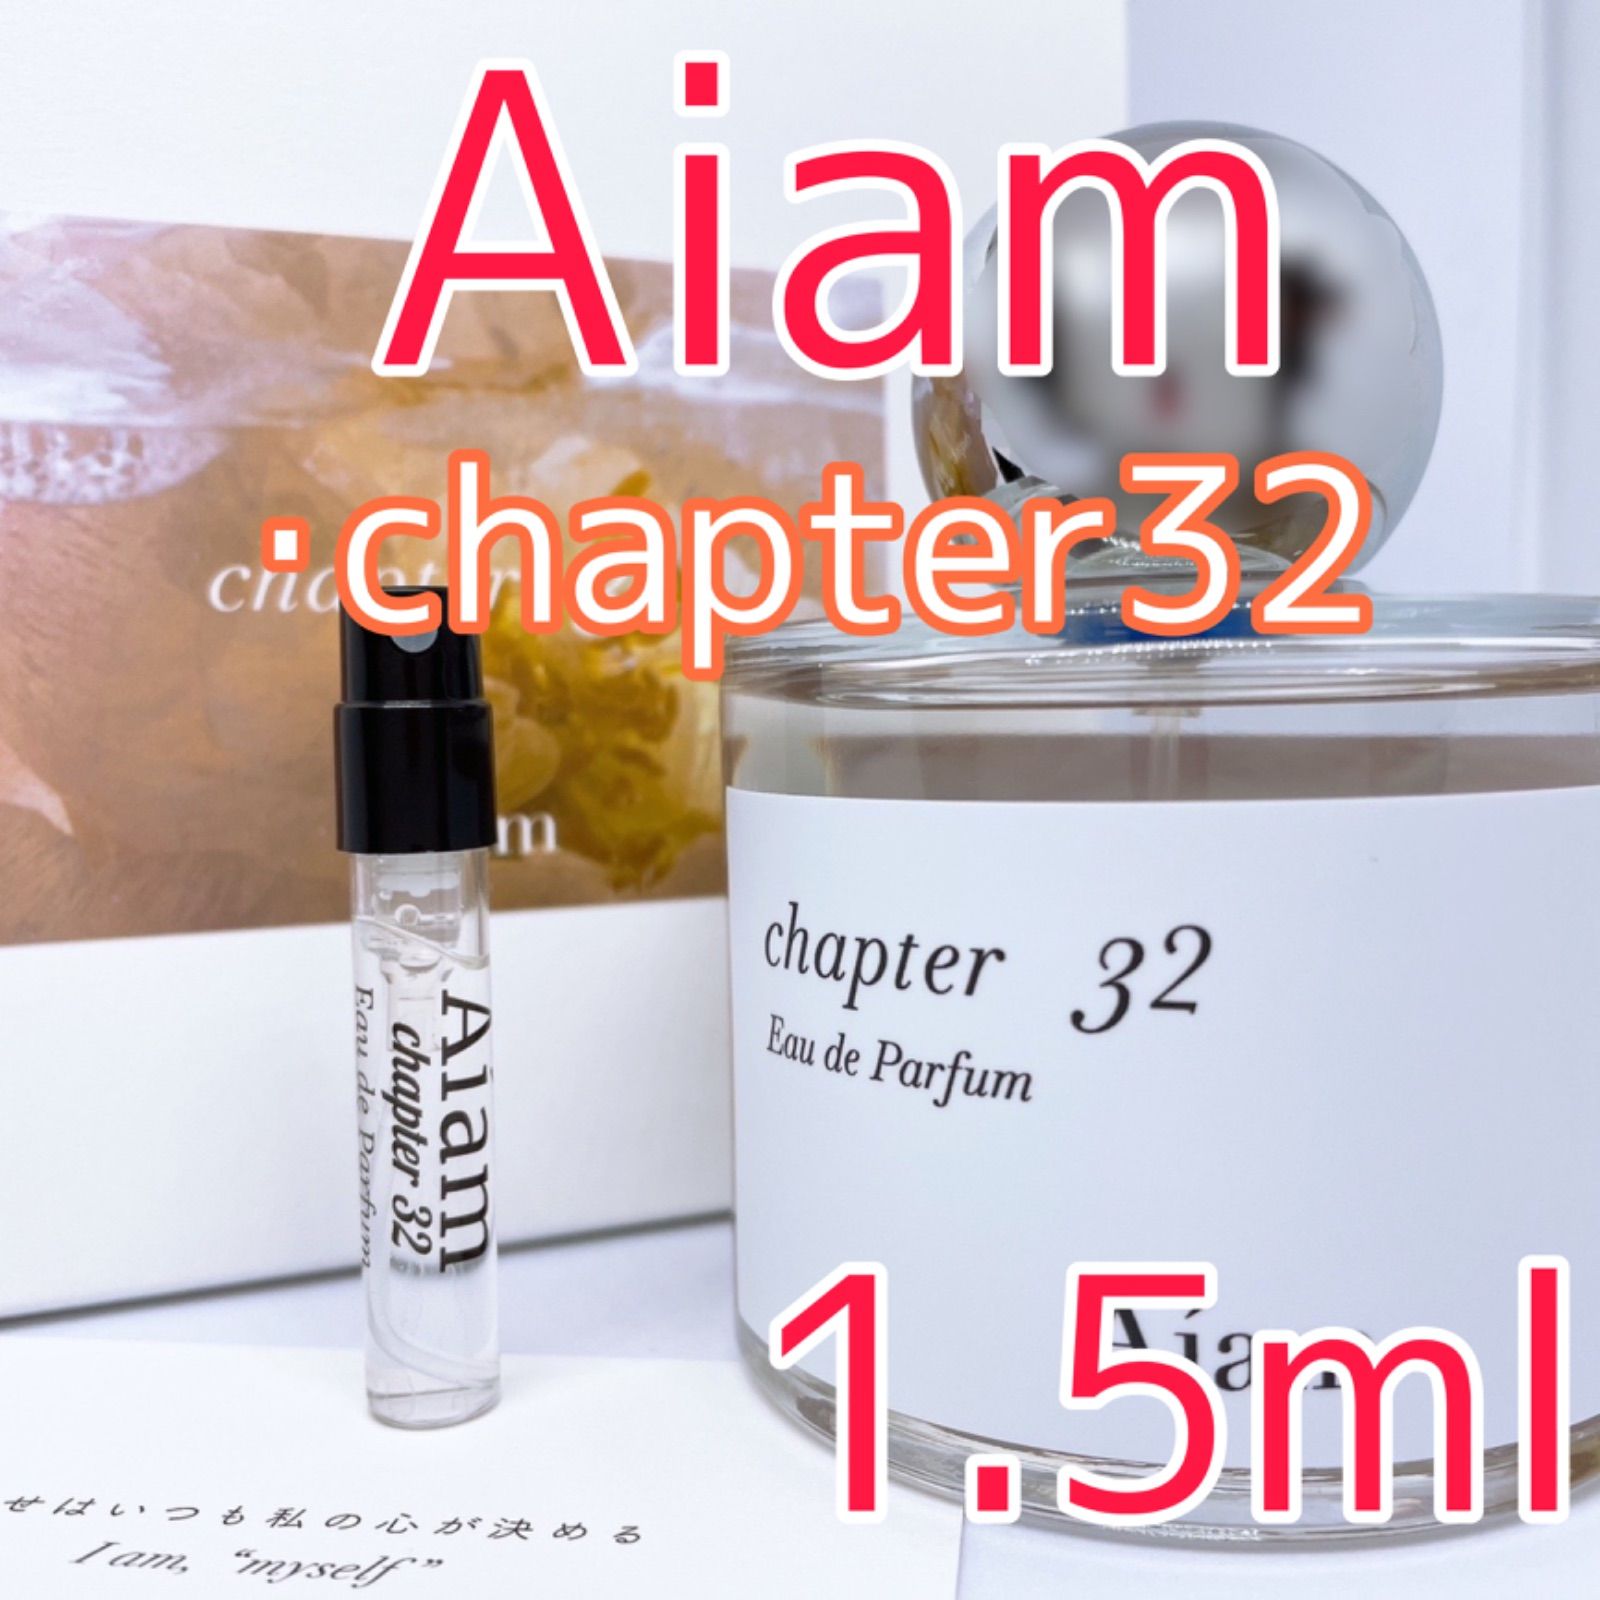 アイアム チャプター32 オードパルファム 香水 1.5ml - 即購入歓迎